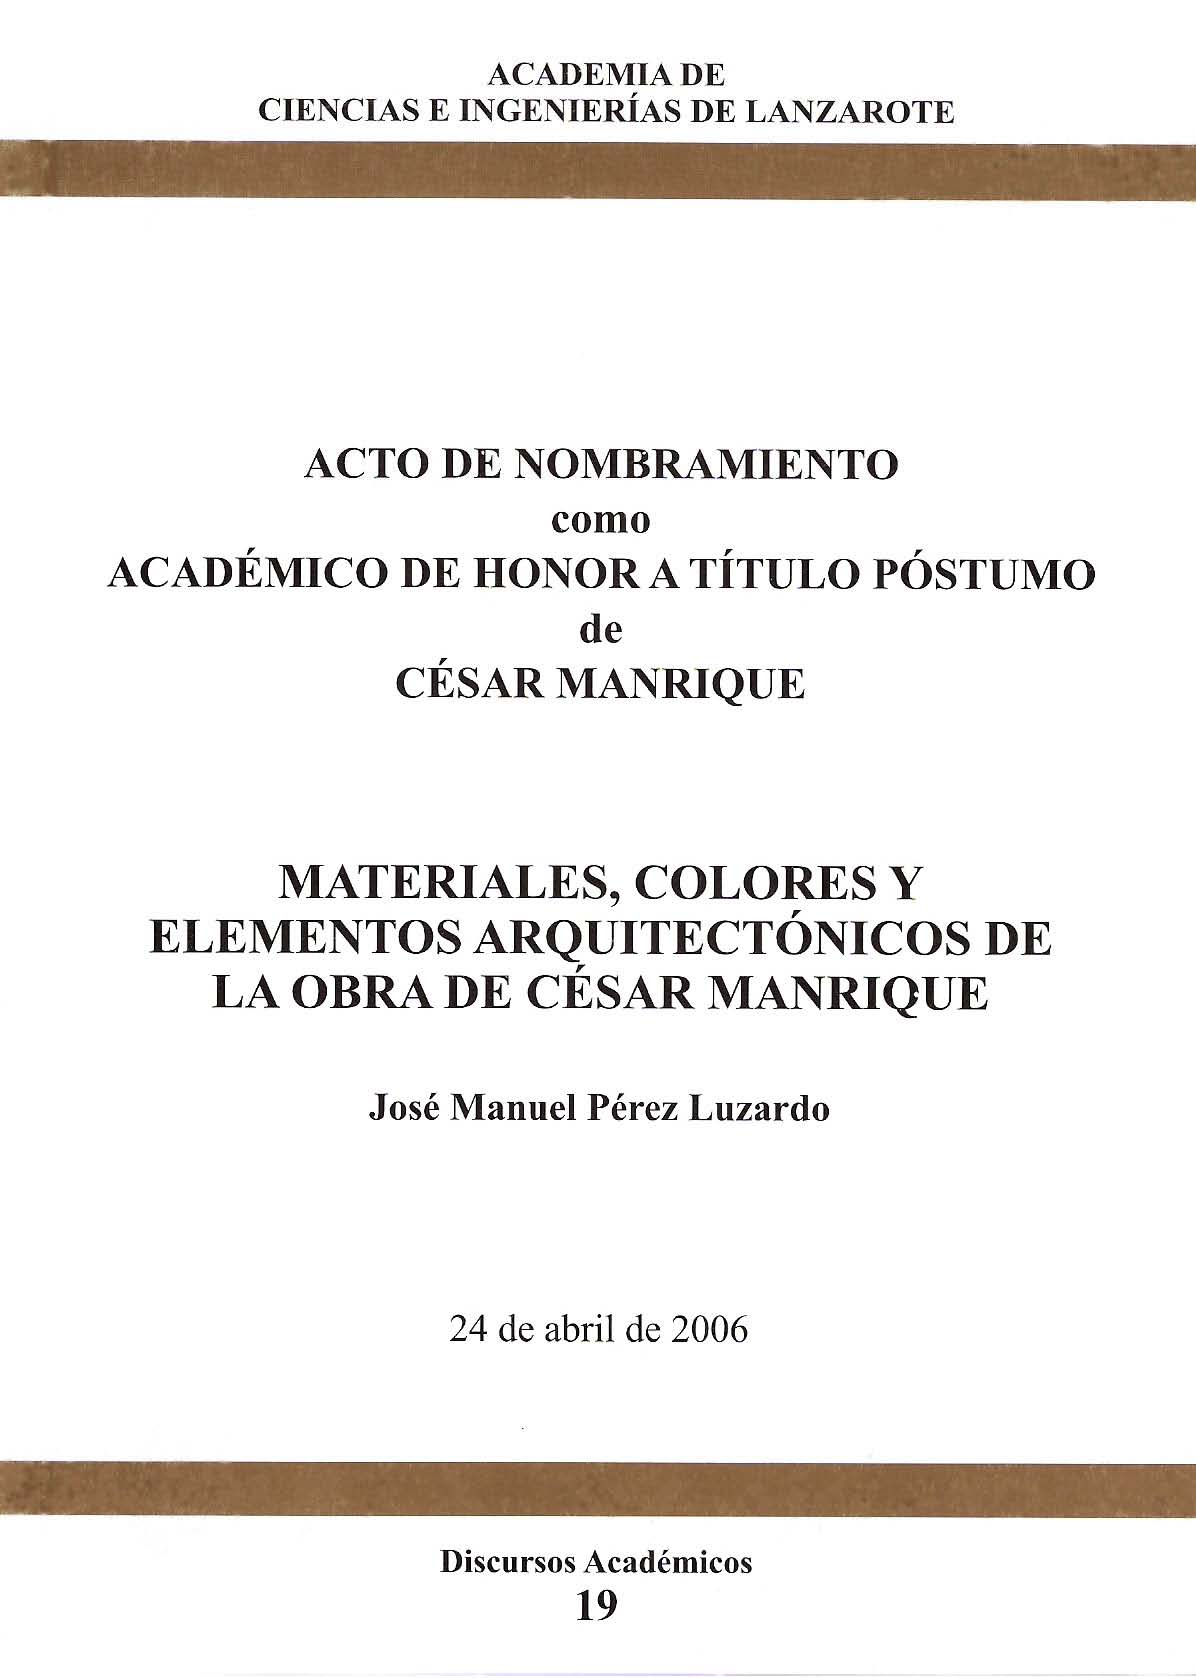 Materiales, colores y elementos arquitectónicos de la obra de César Manrique